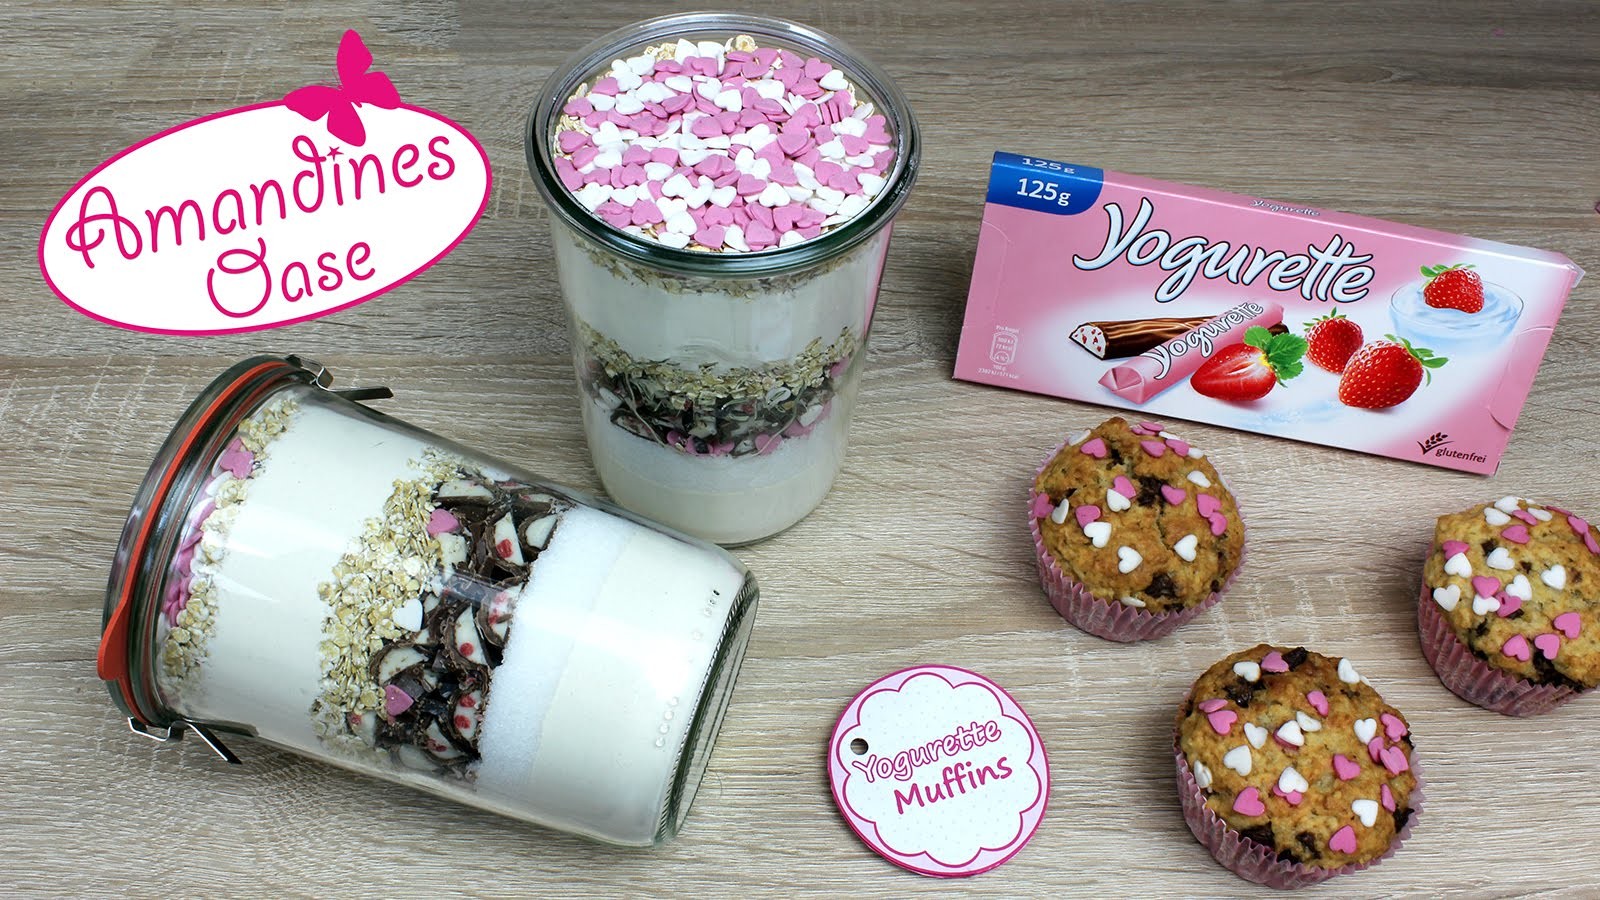 Yogurette-Muffins Backmischung im Glas (mit Etikett) | Muttertag-Muffins  | DIY Geschenk